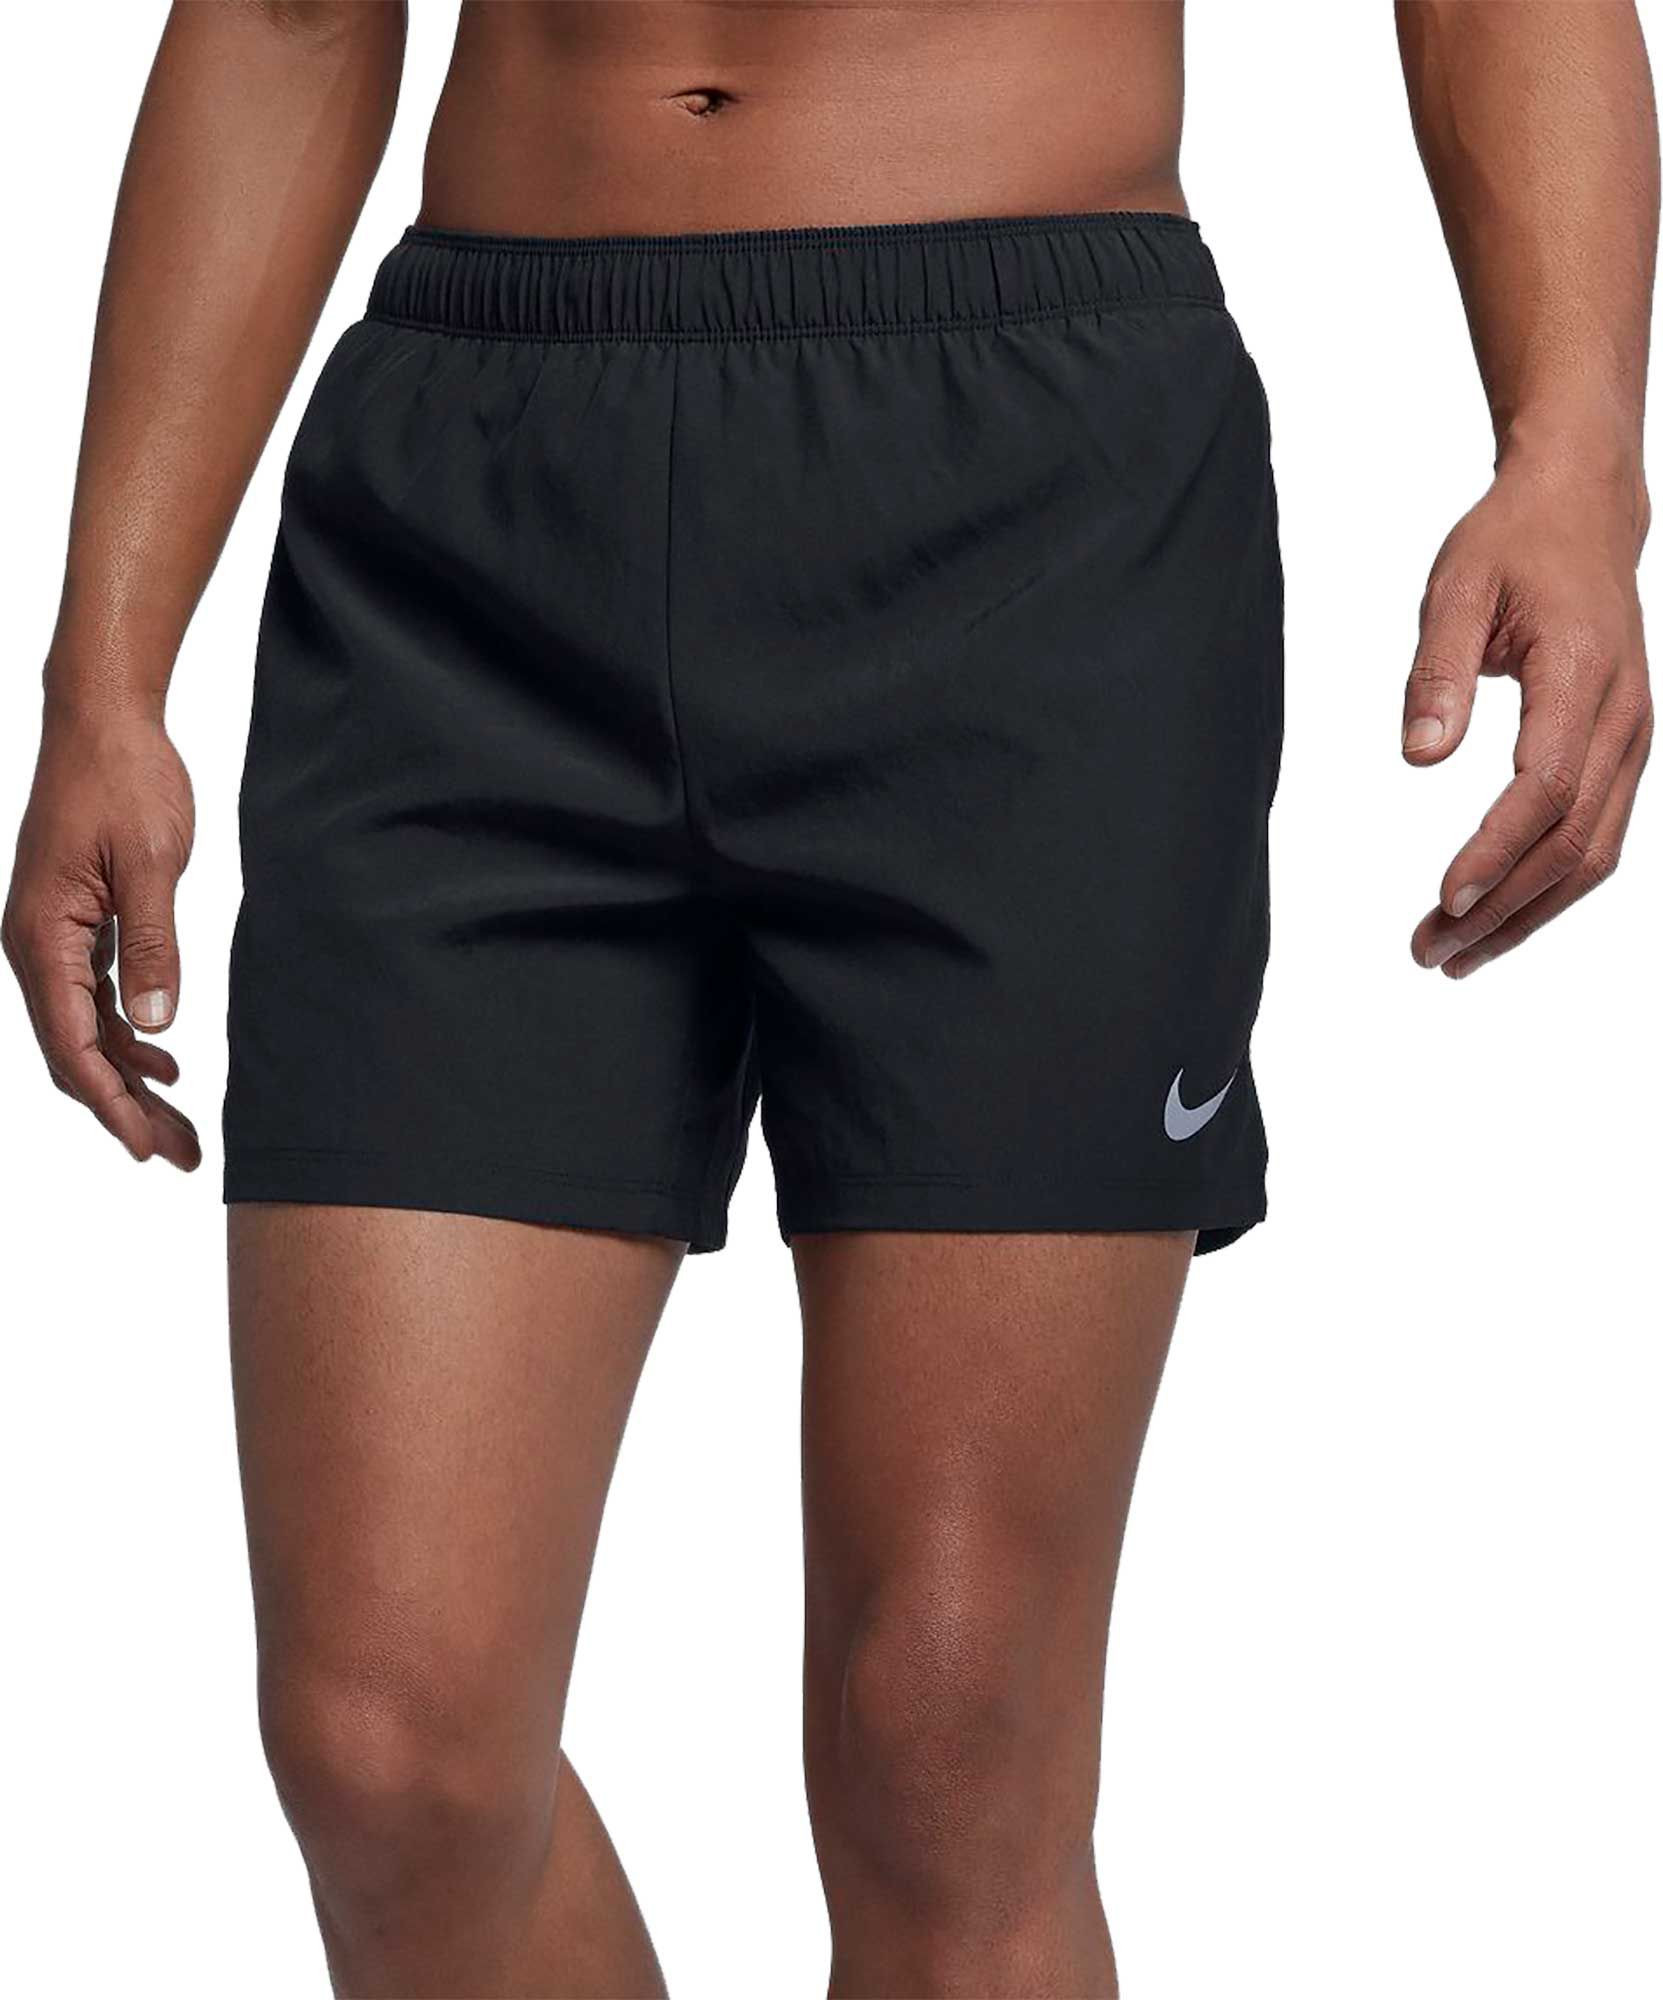 nike men's challenger 5in running shorts